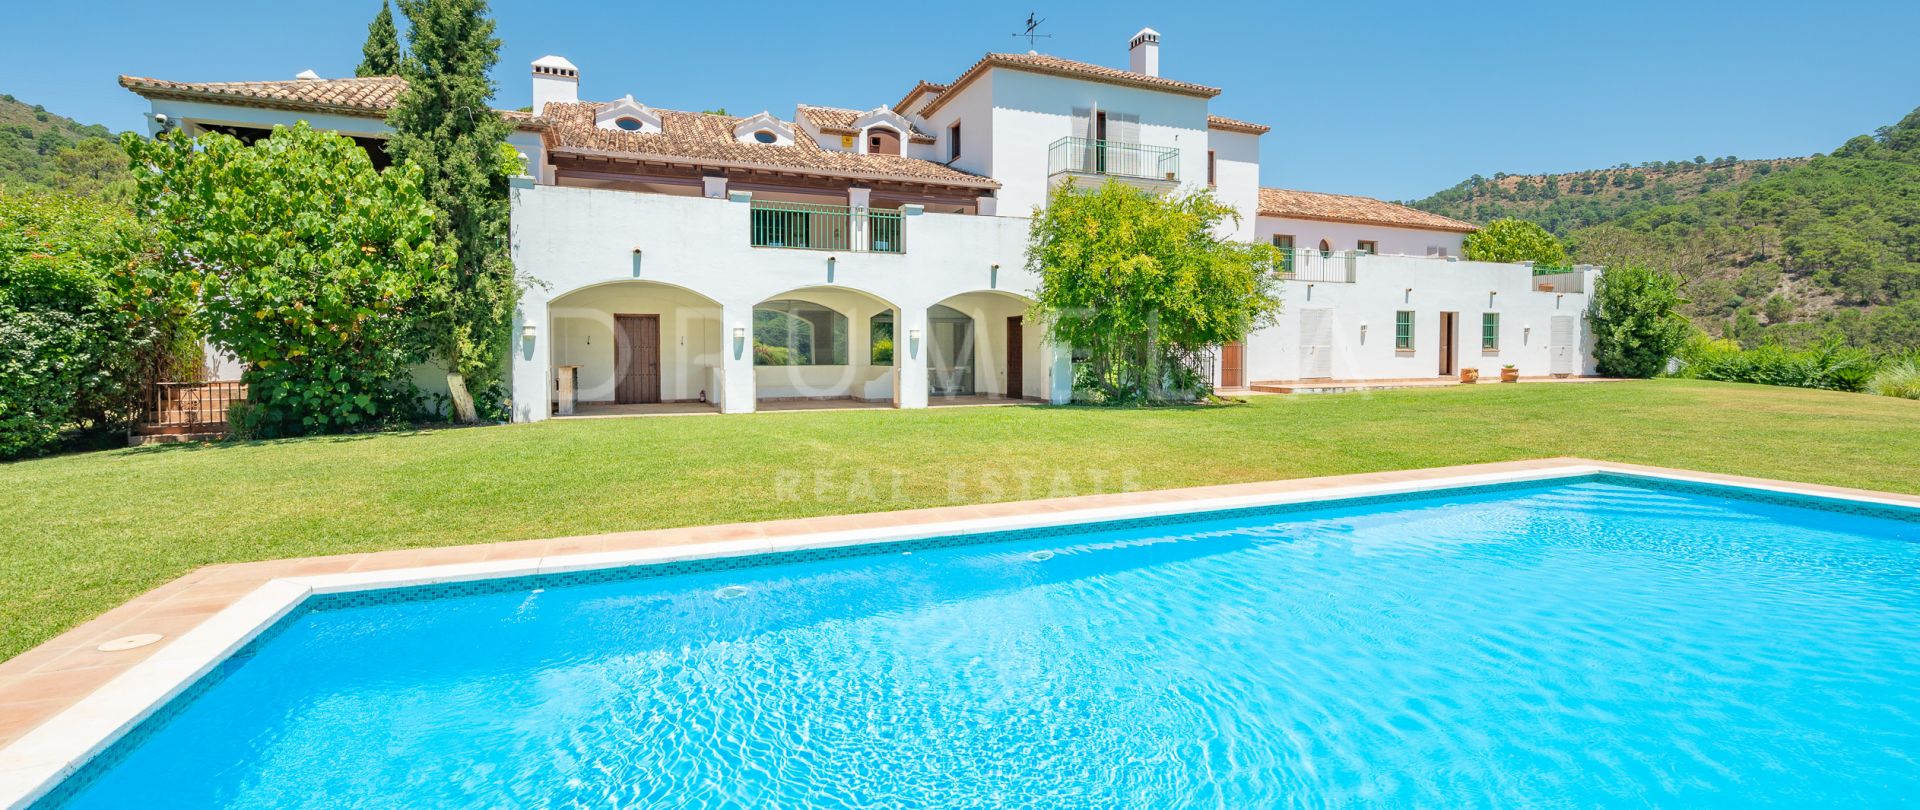 Impressionnante propriété andalouse de luxe à la campagne avec un grand terrain, Estepona